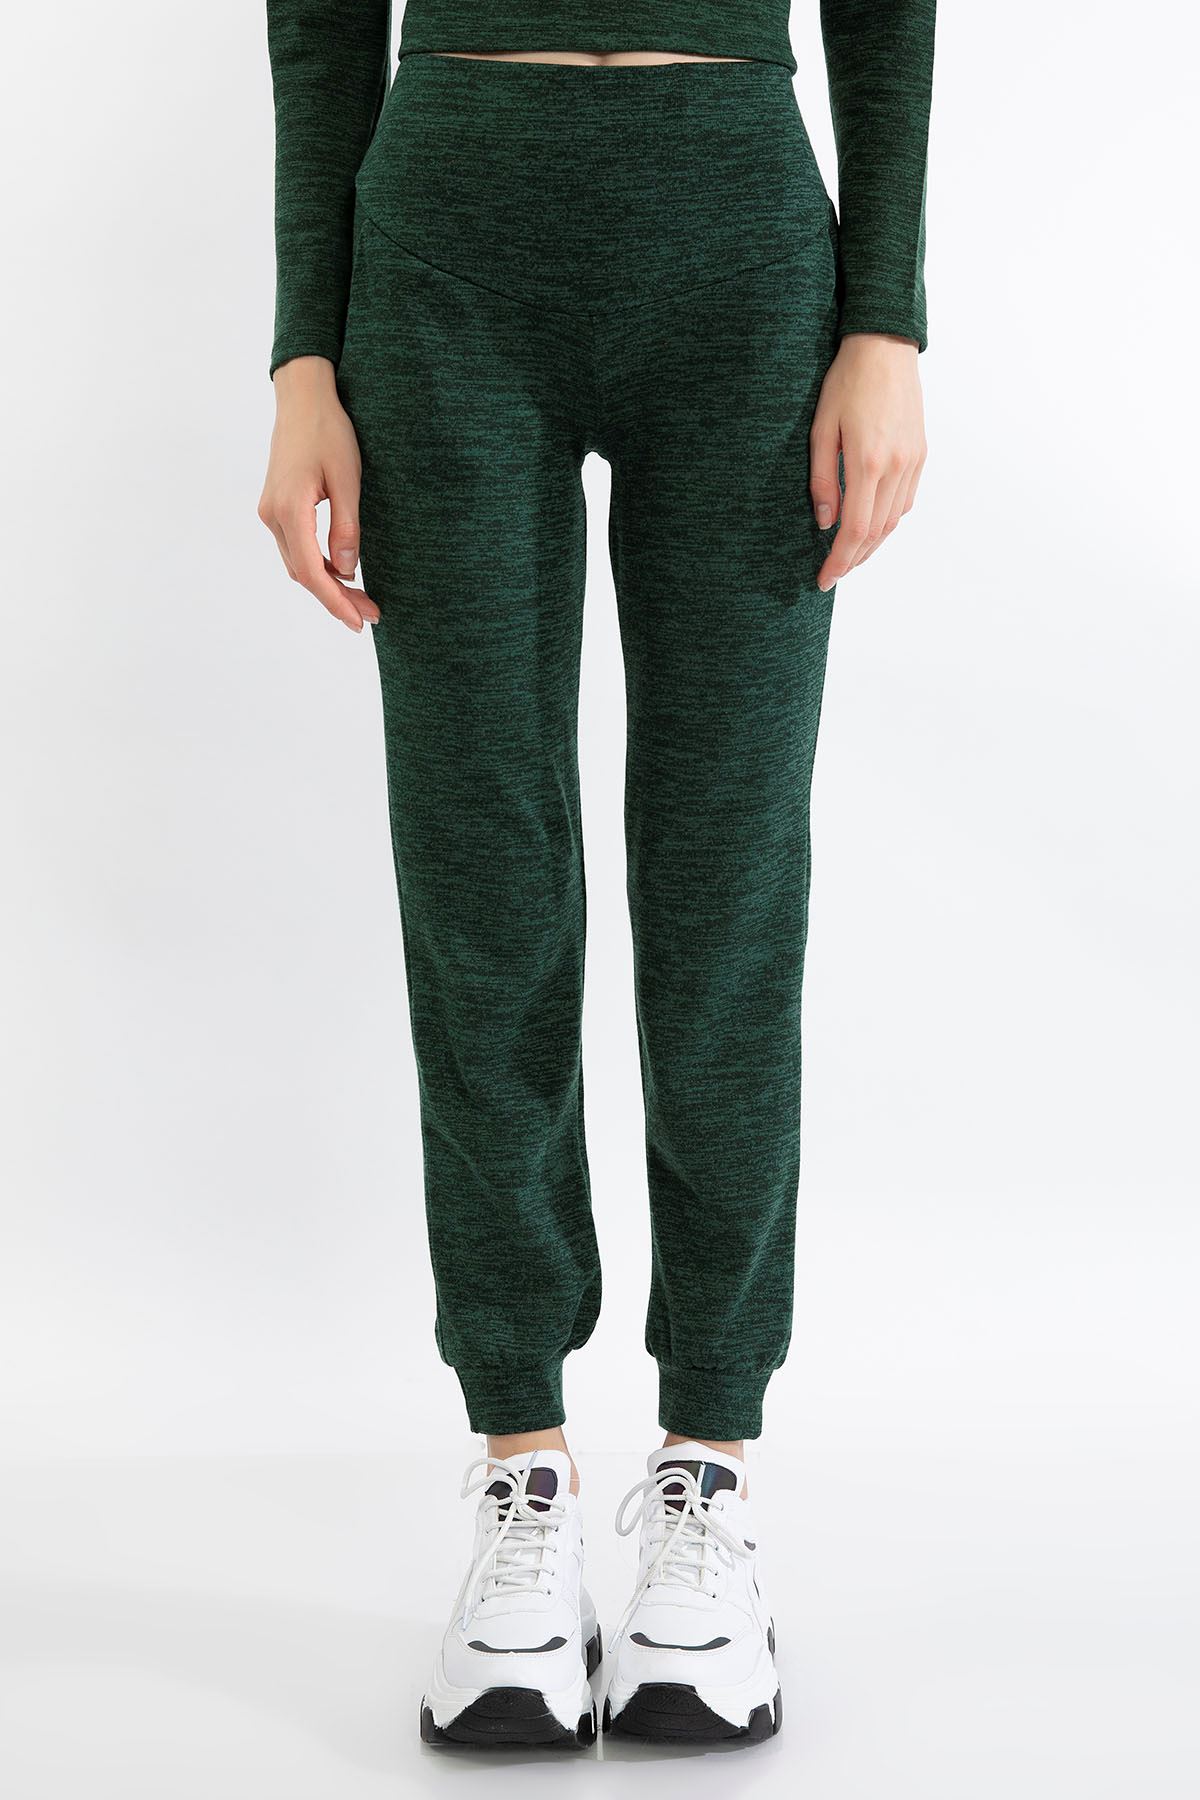 Melanj Kumaş Uzun Boy Rahat Kalıp Kırçıllı Kadın Pantolon-Zümrüt Yeşil